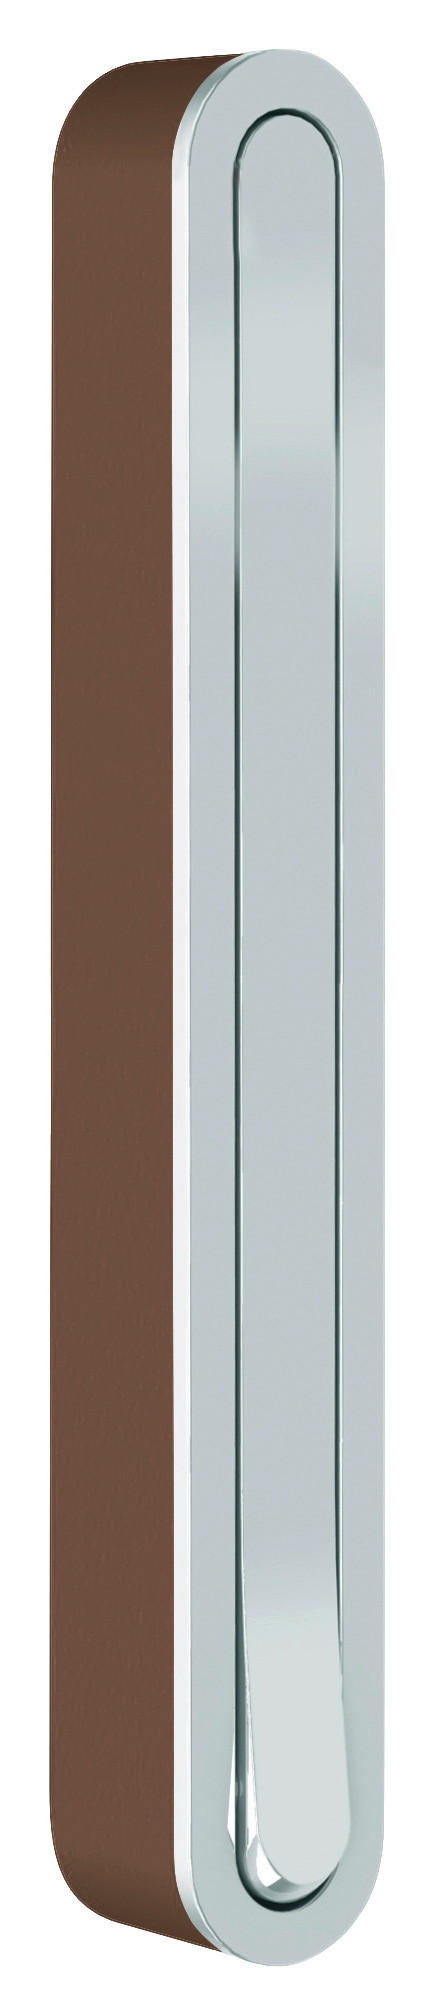 WANDHAKEN Braun, Chromfarben  - Chromfarben/Braun, Design, Kunststoff/Metall (2,1/16/2,1-15,6cm)